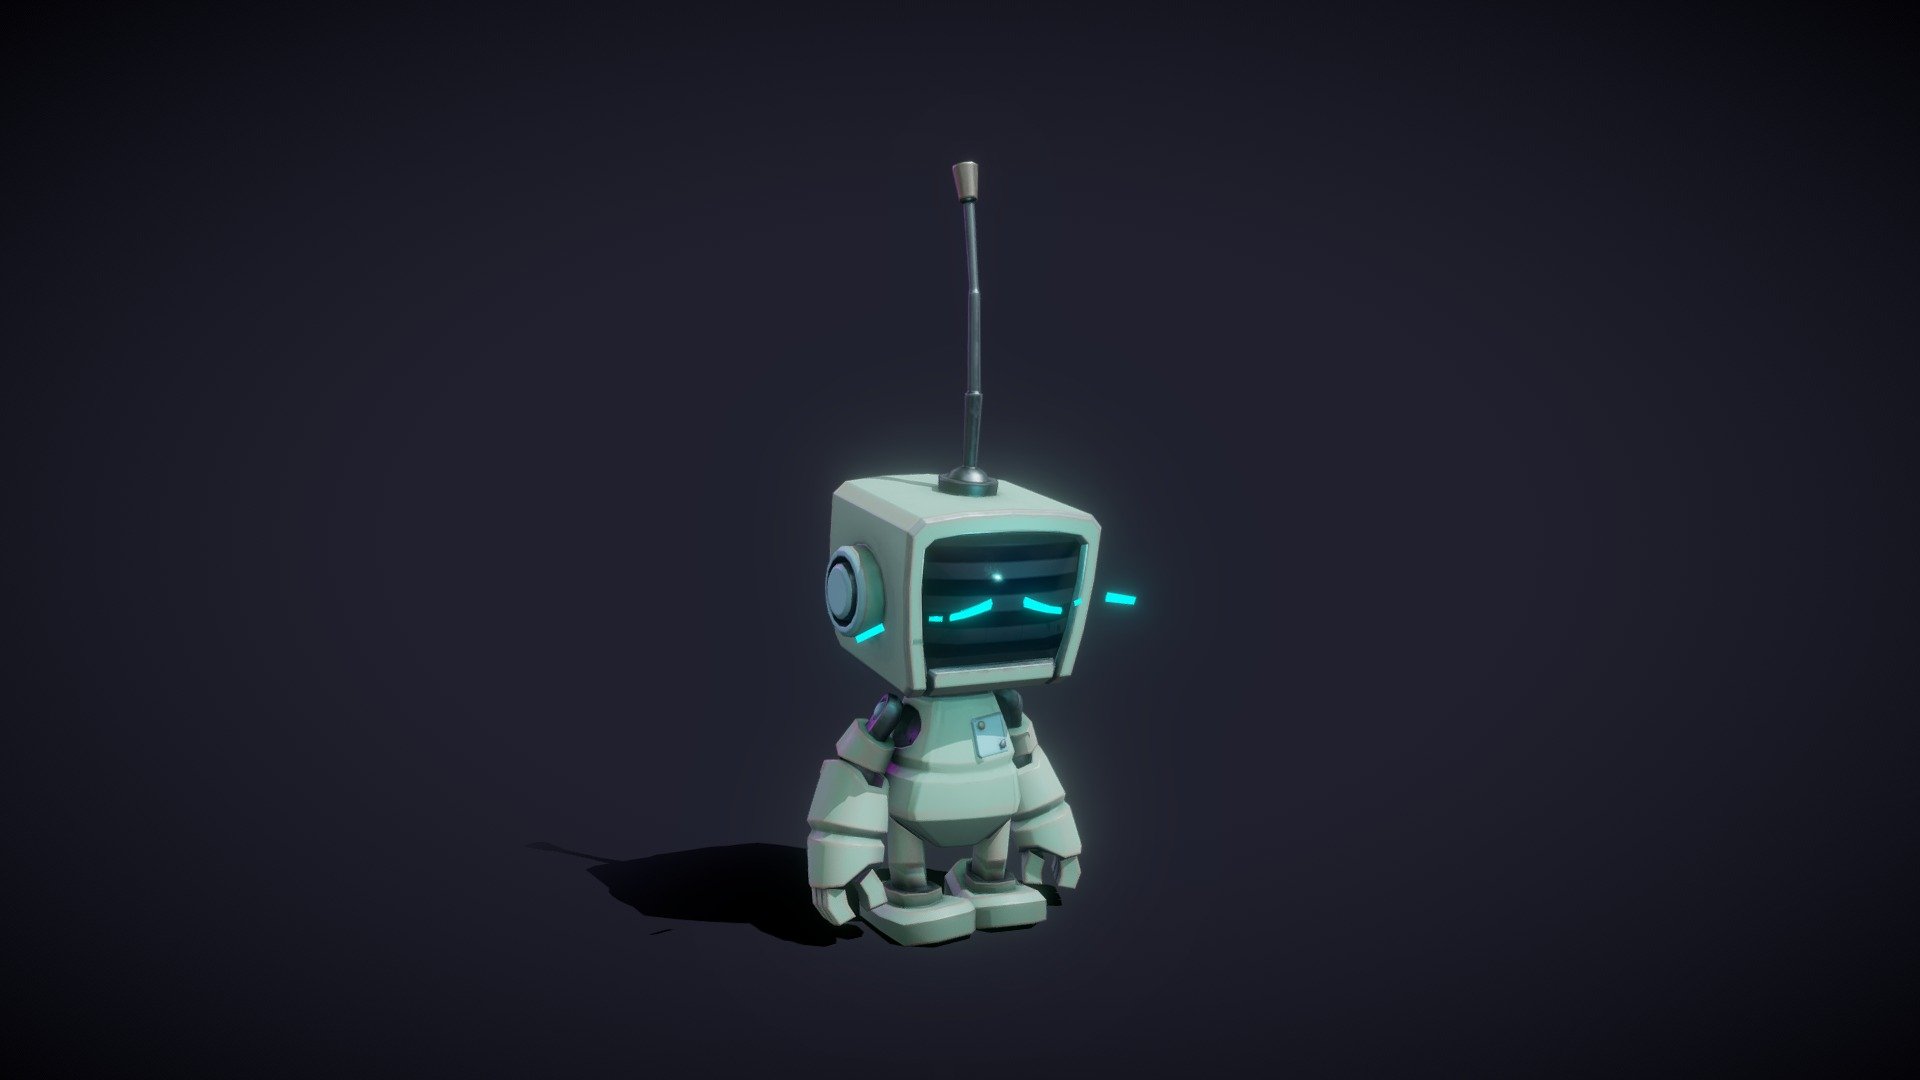 sad robot :( - Sad Robot - 3D model by plasmaernst 3d model